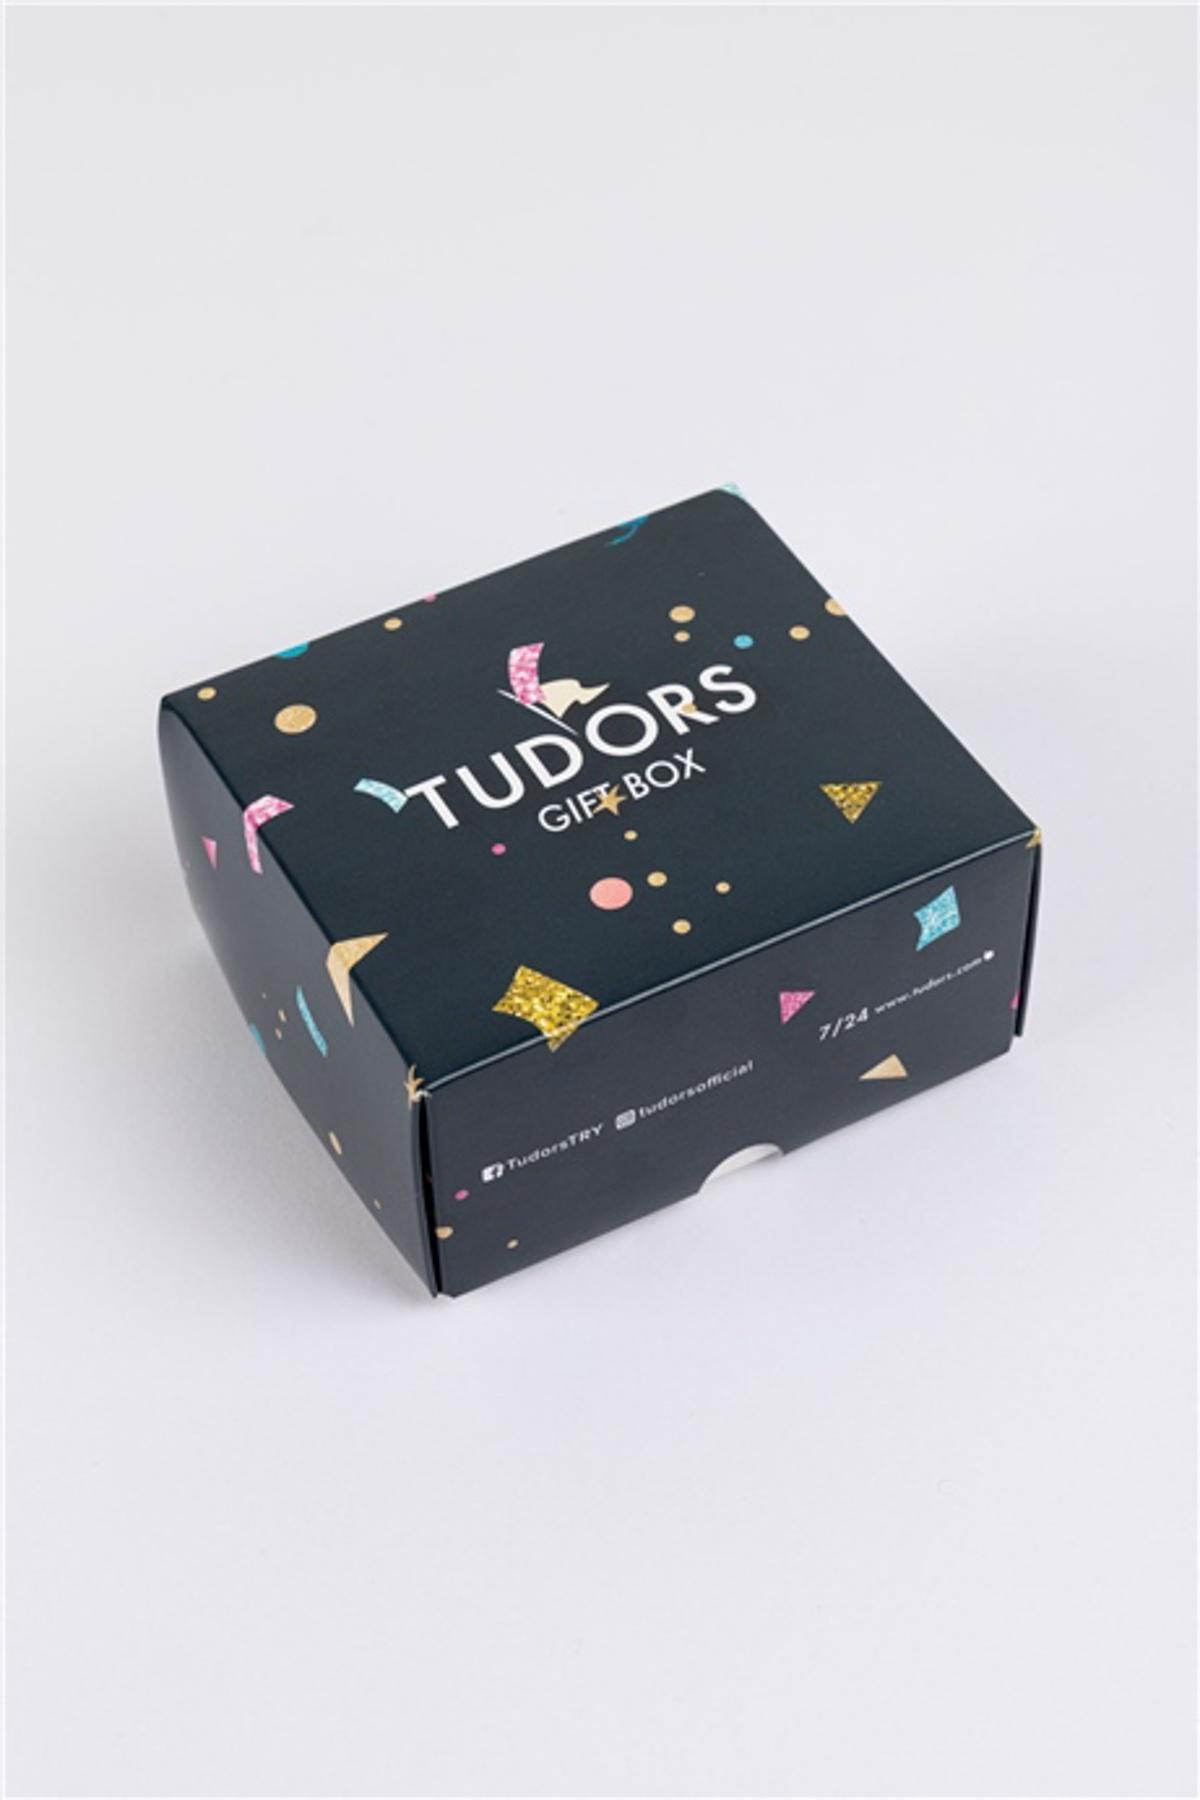 Selected image for TUDORS Muški poklon set čarape + boskerice crni